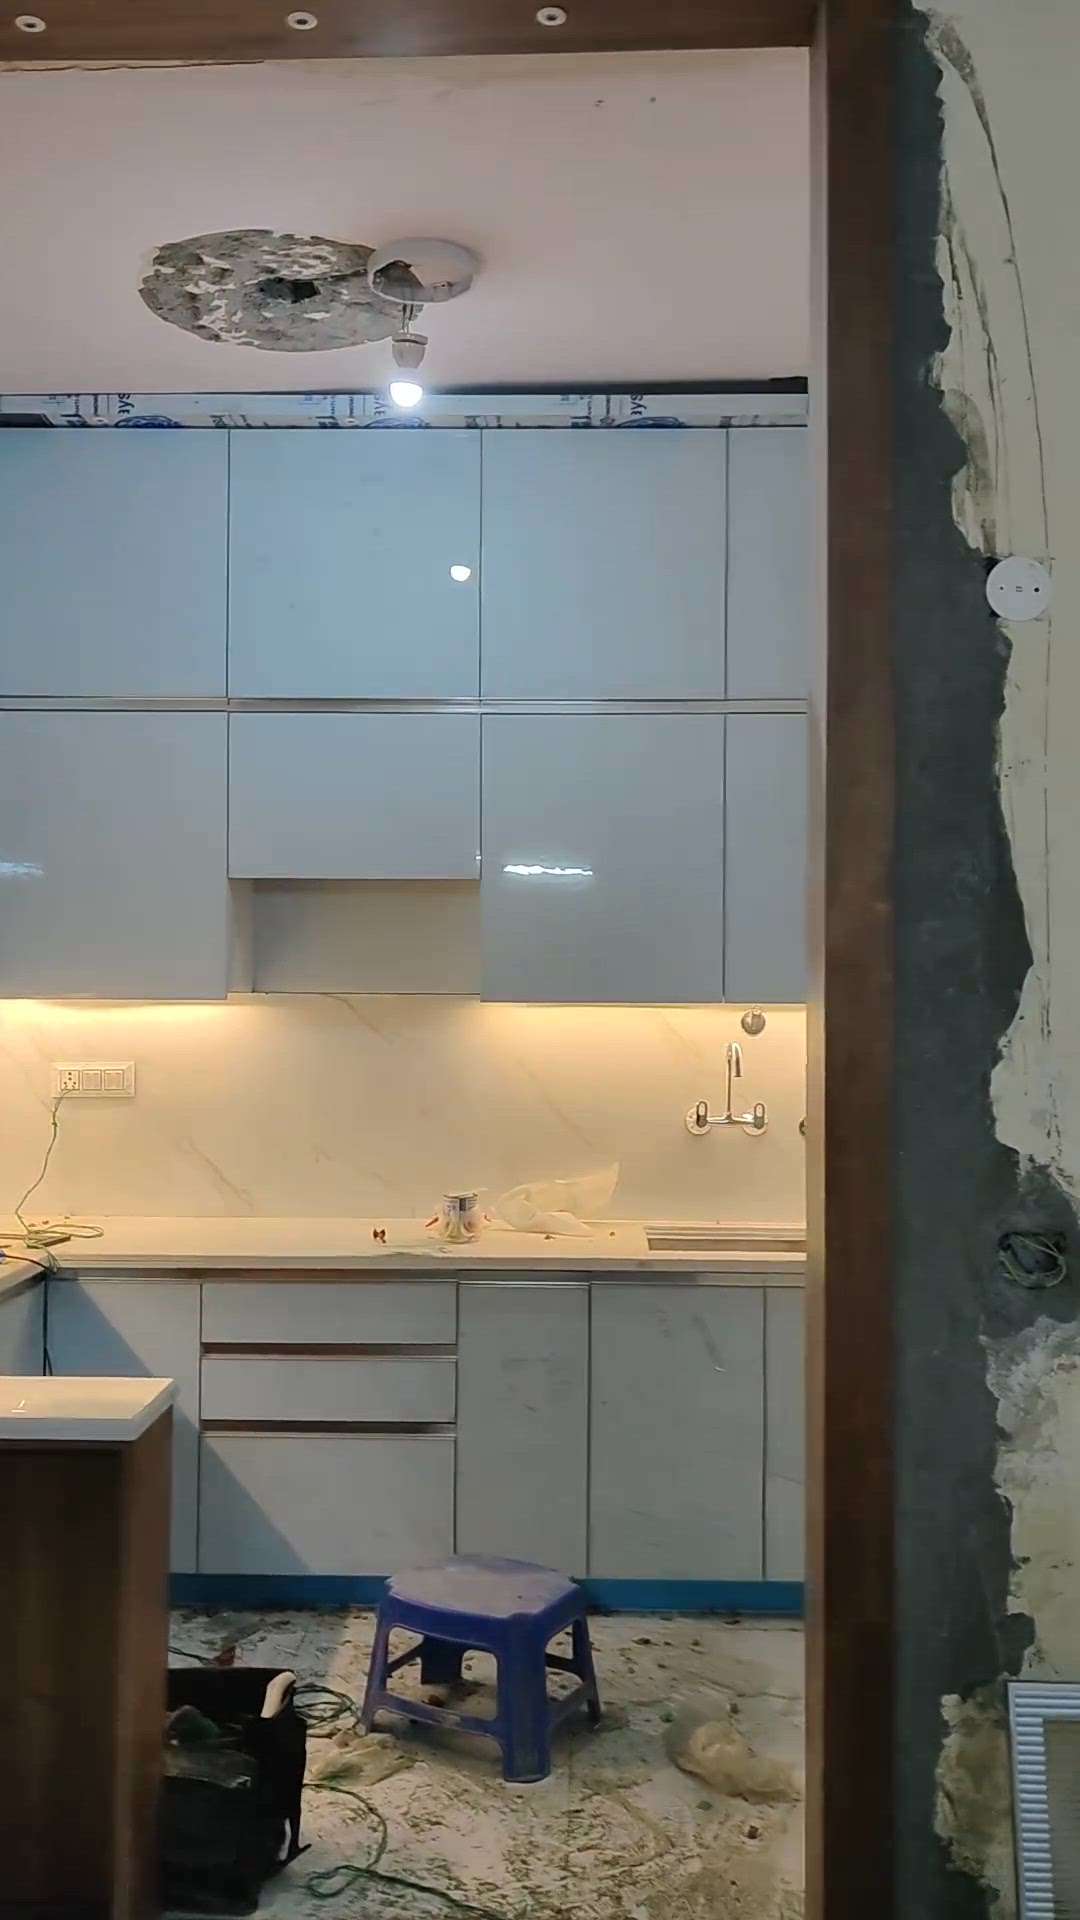 best Modular kitchen design ❤️

#ModularKitchen #InteriorDesigner #HouseDesigns